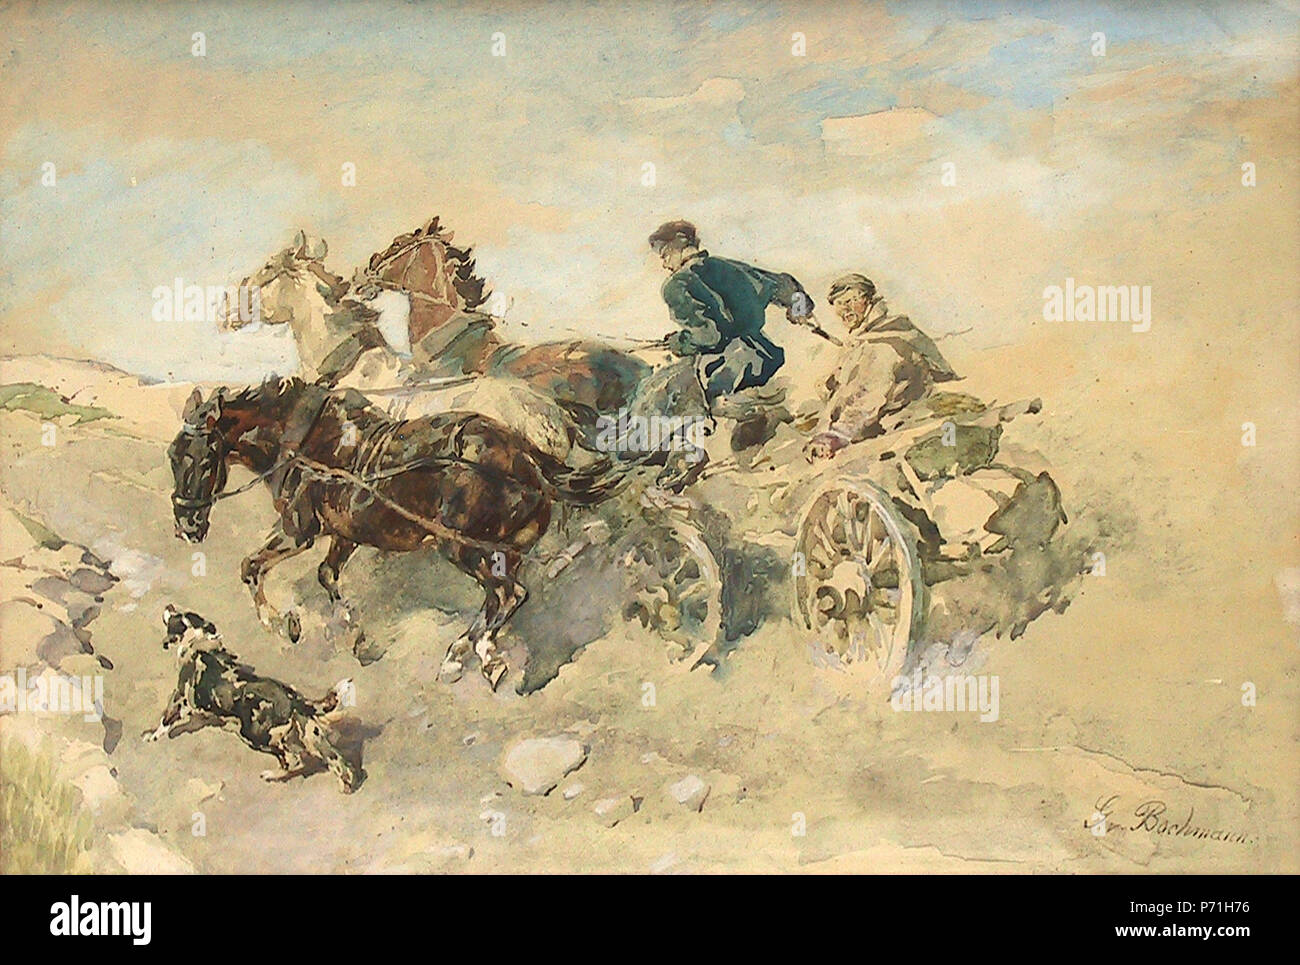 . Estnische Bauern mit Pferdegespann (estonian peasants in horse drawn carriage)  5 August 2002, 05:31:30 18 Bochmann B0184 - Pferdegespann Stock Photo